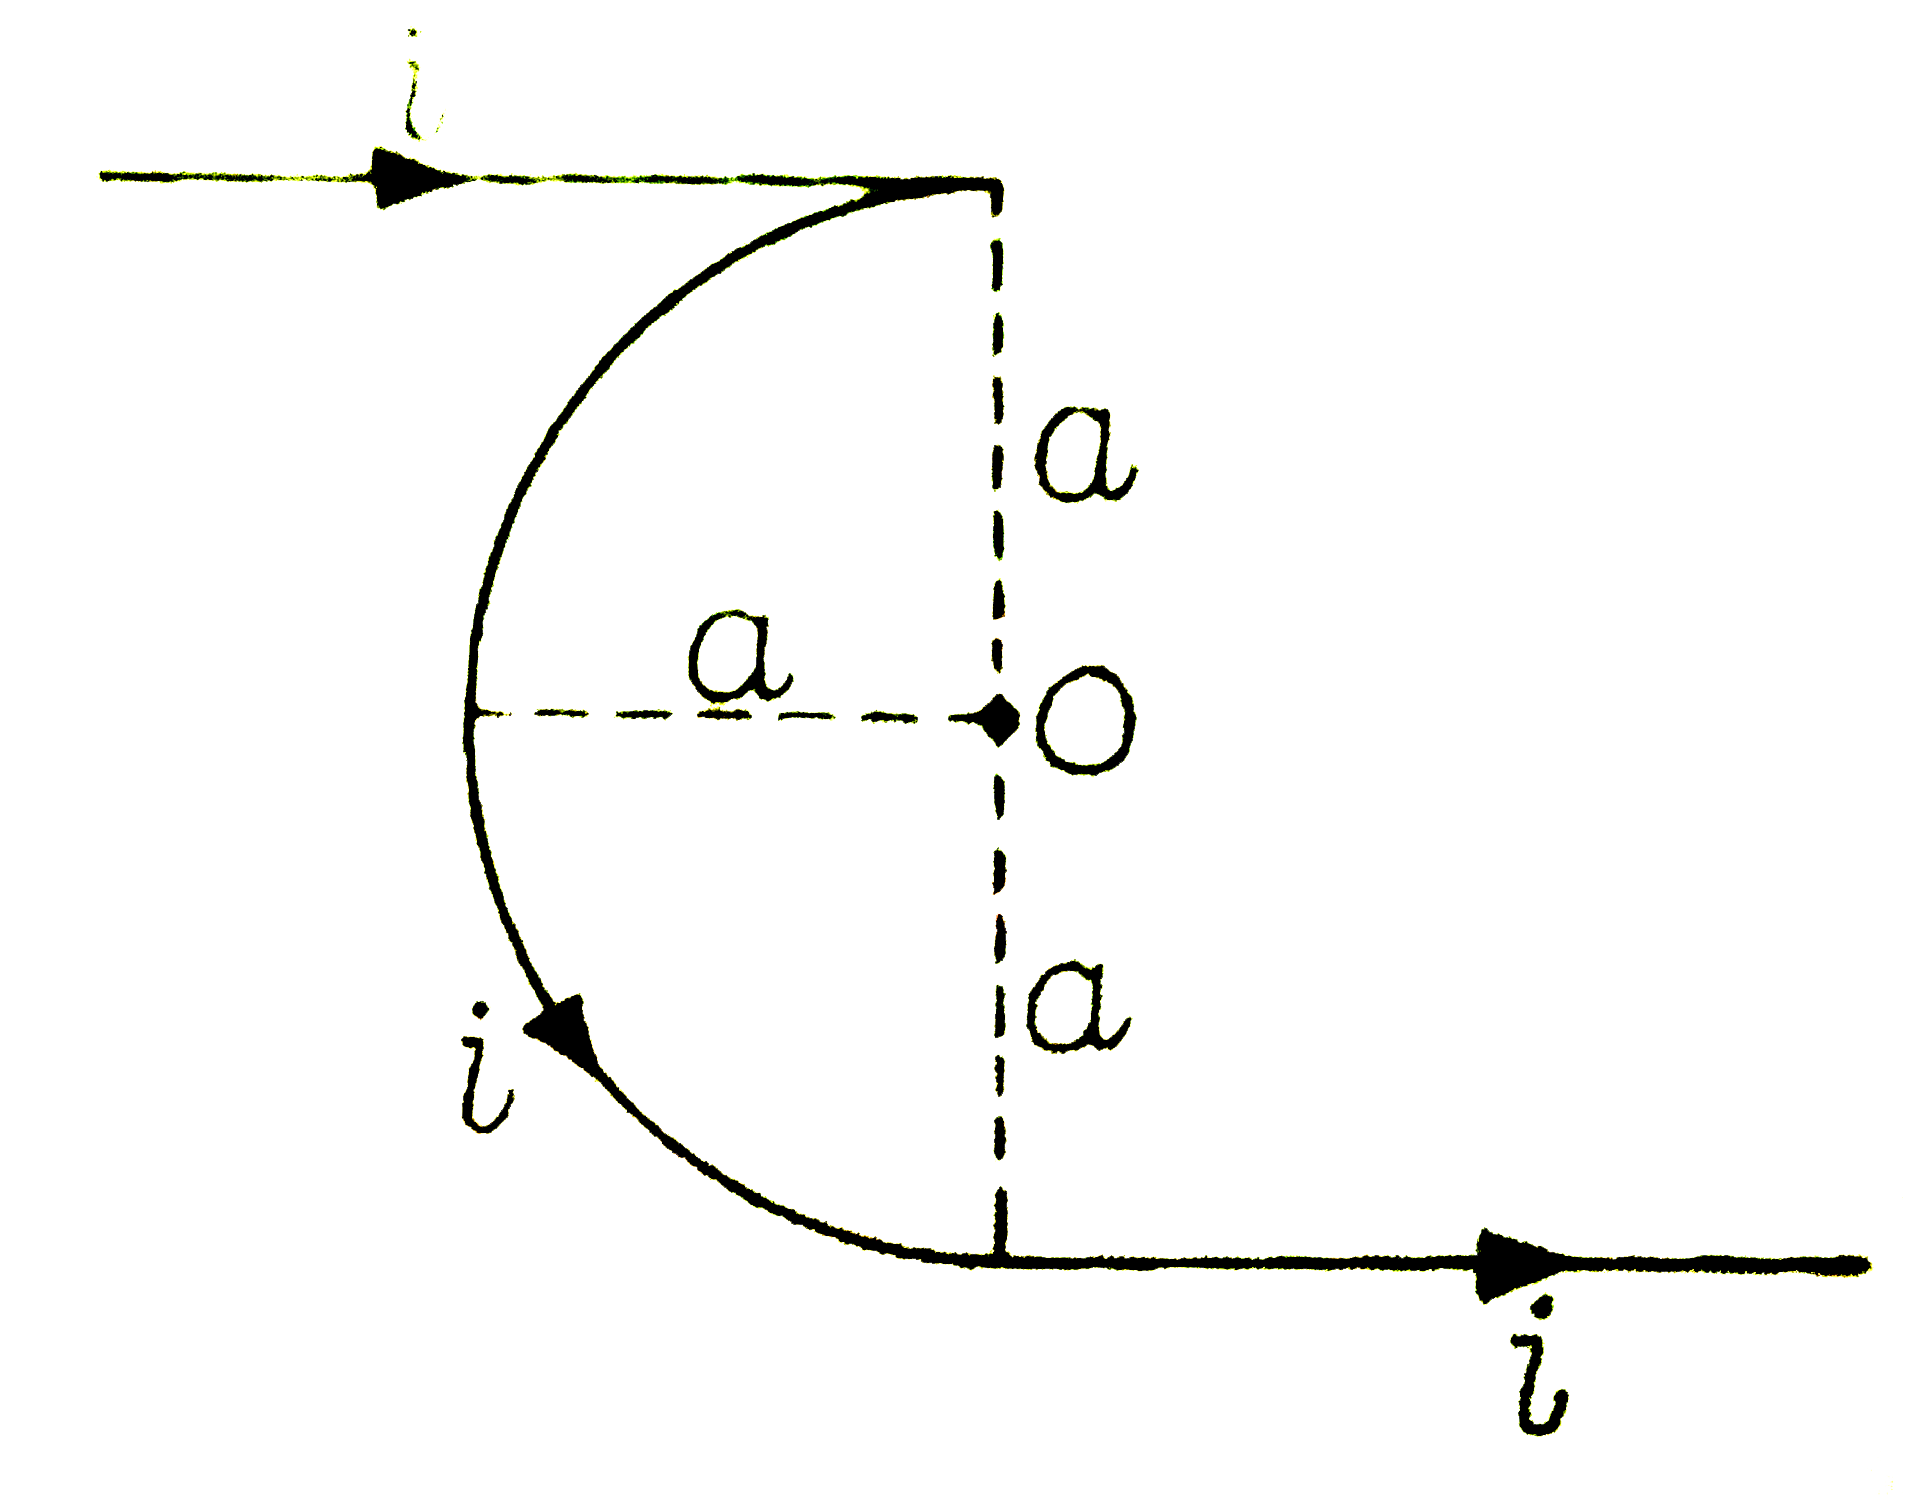 संलग्न चित्र में प्रदर्शित तार में धारा i के कारण बिन्दु O पर चुंबकीय क्षेत्र का मान व दिशा ज्ञात कीजिए।